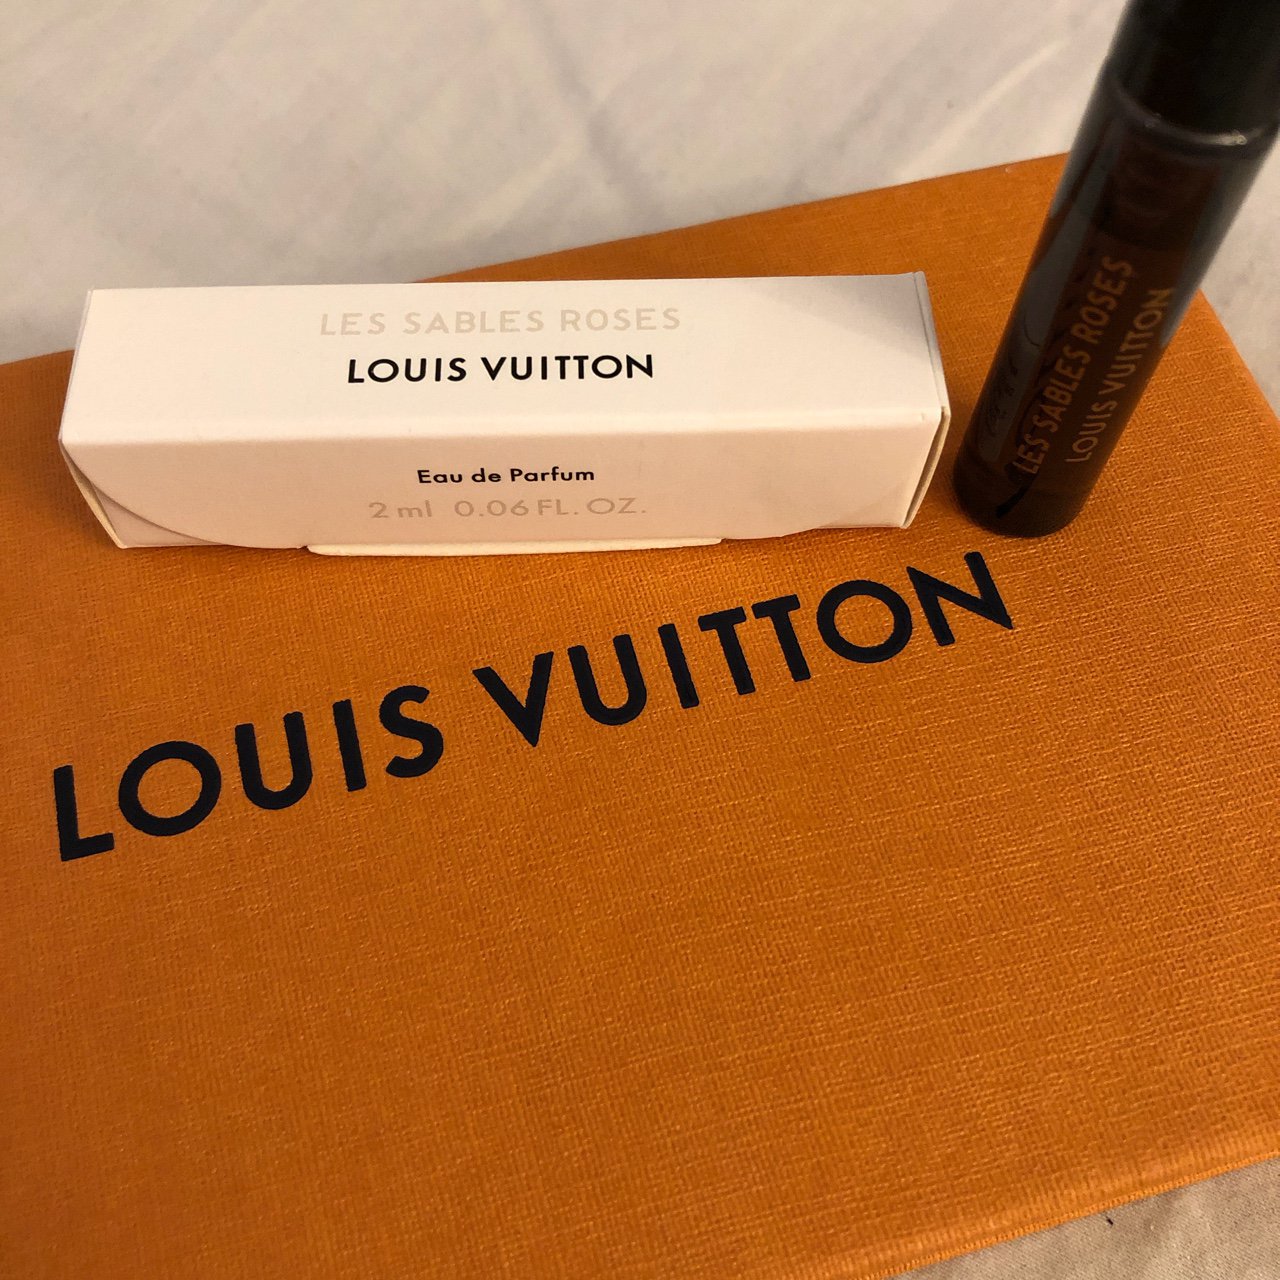 Les Sables Roses - Louis Vuitton ®